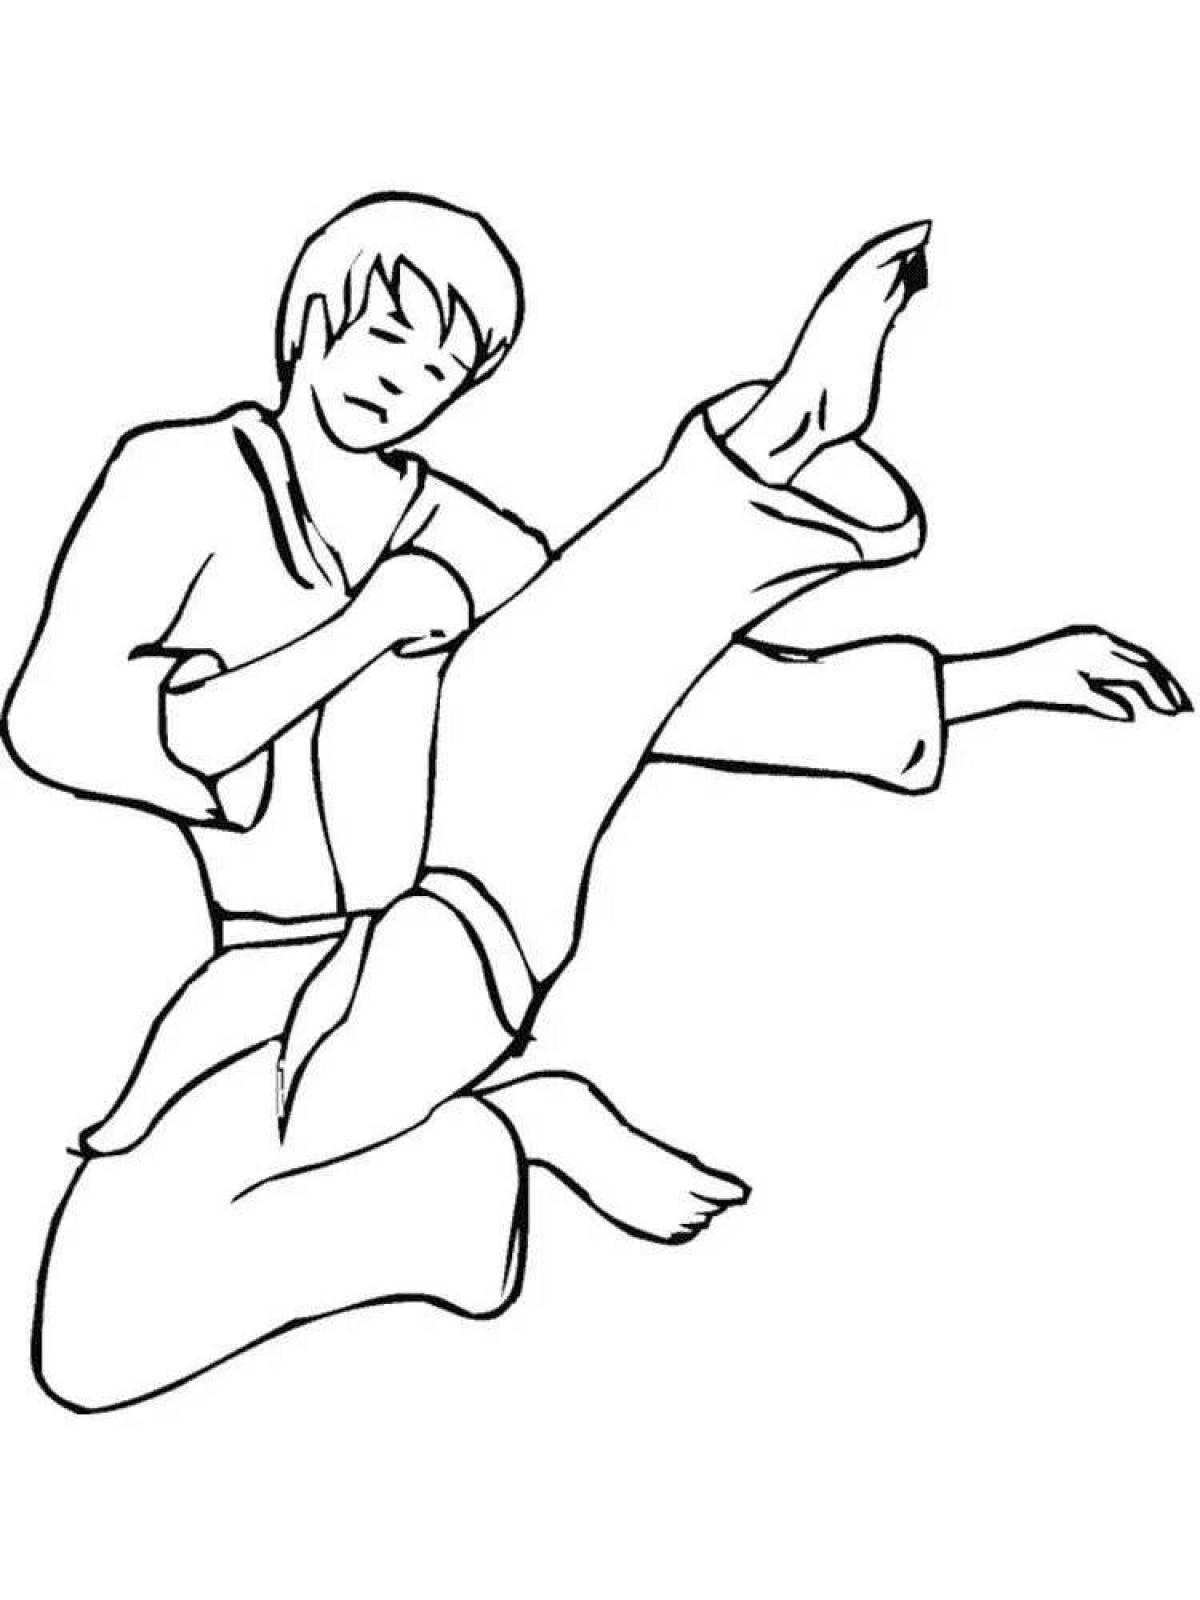 Fun taekwondo coloring book